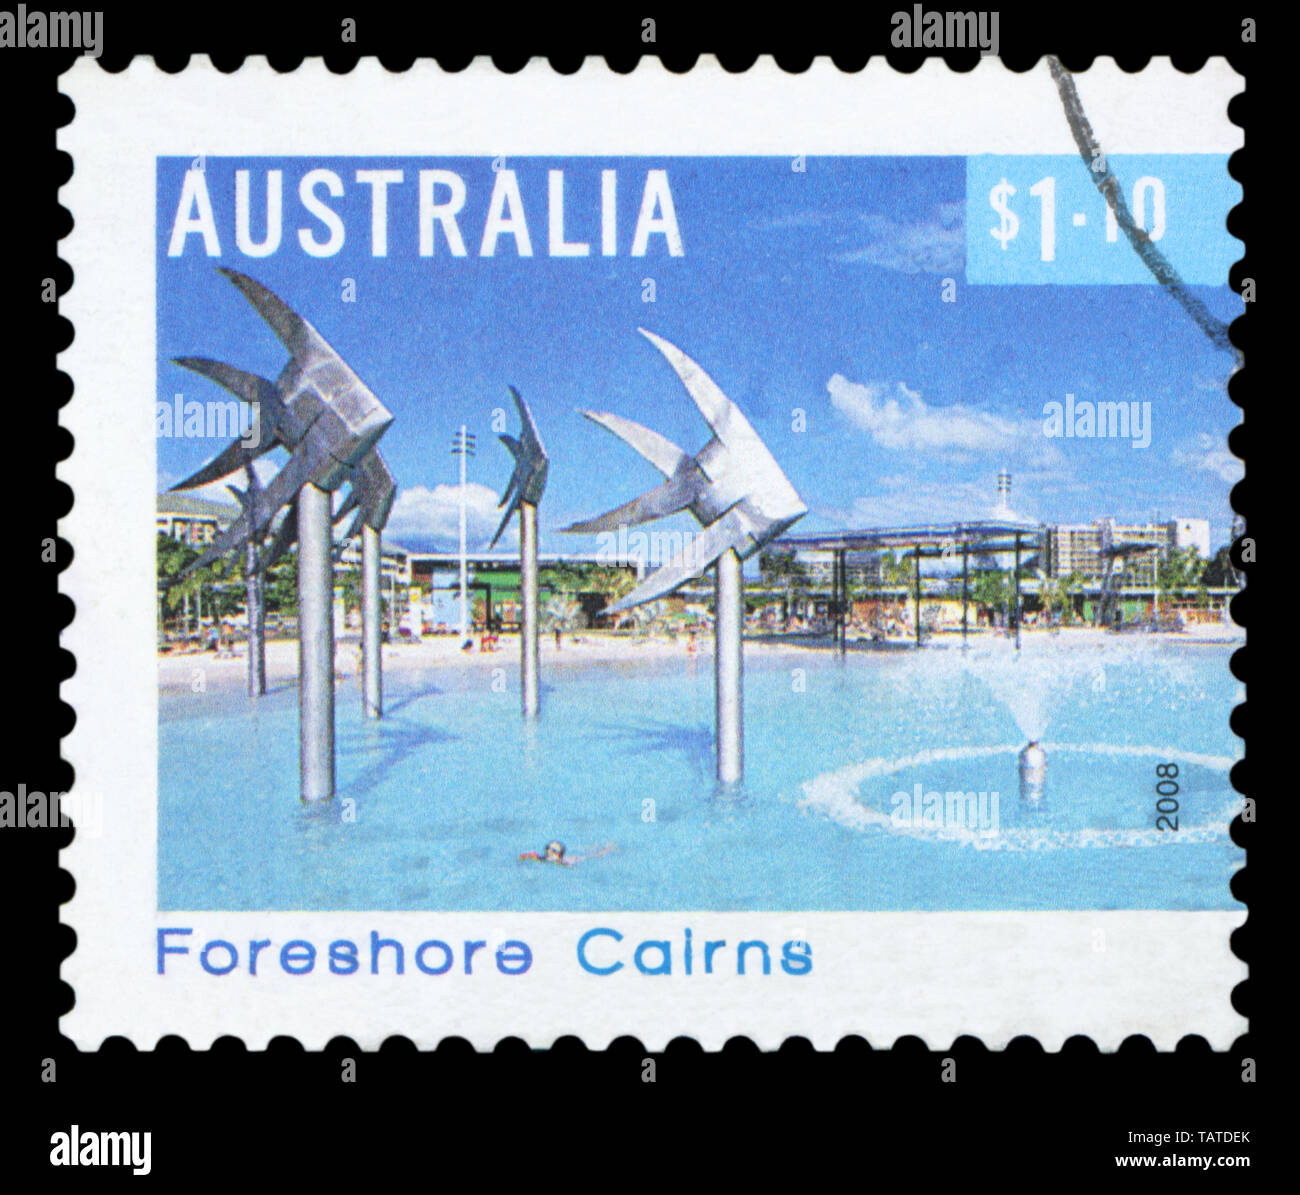 Australien - ca. 2008: einen Stempel in Australien gedruckten zeigt das Vorland Cairns, Queensland, Australien, circa 2008. Stockfoto